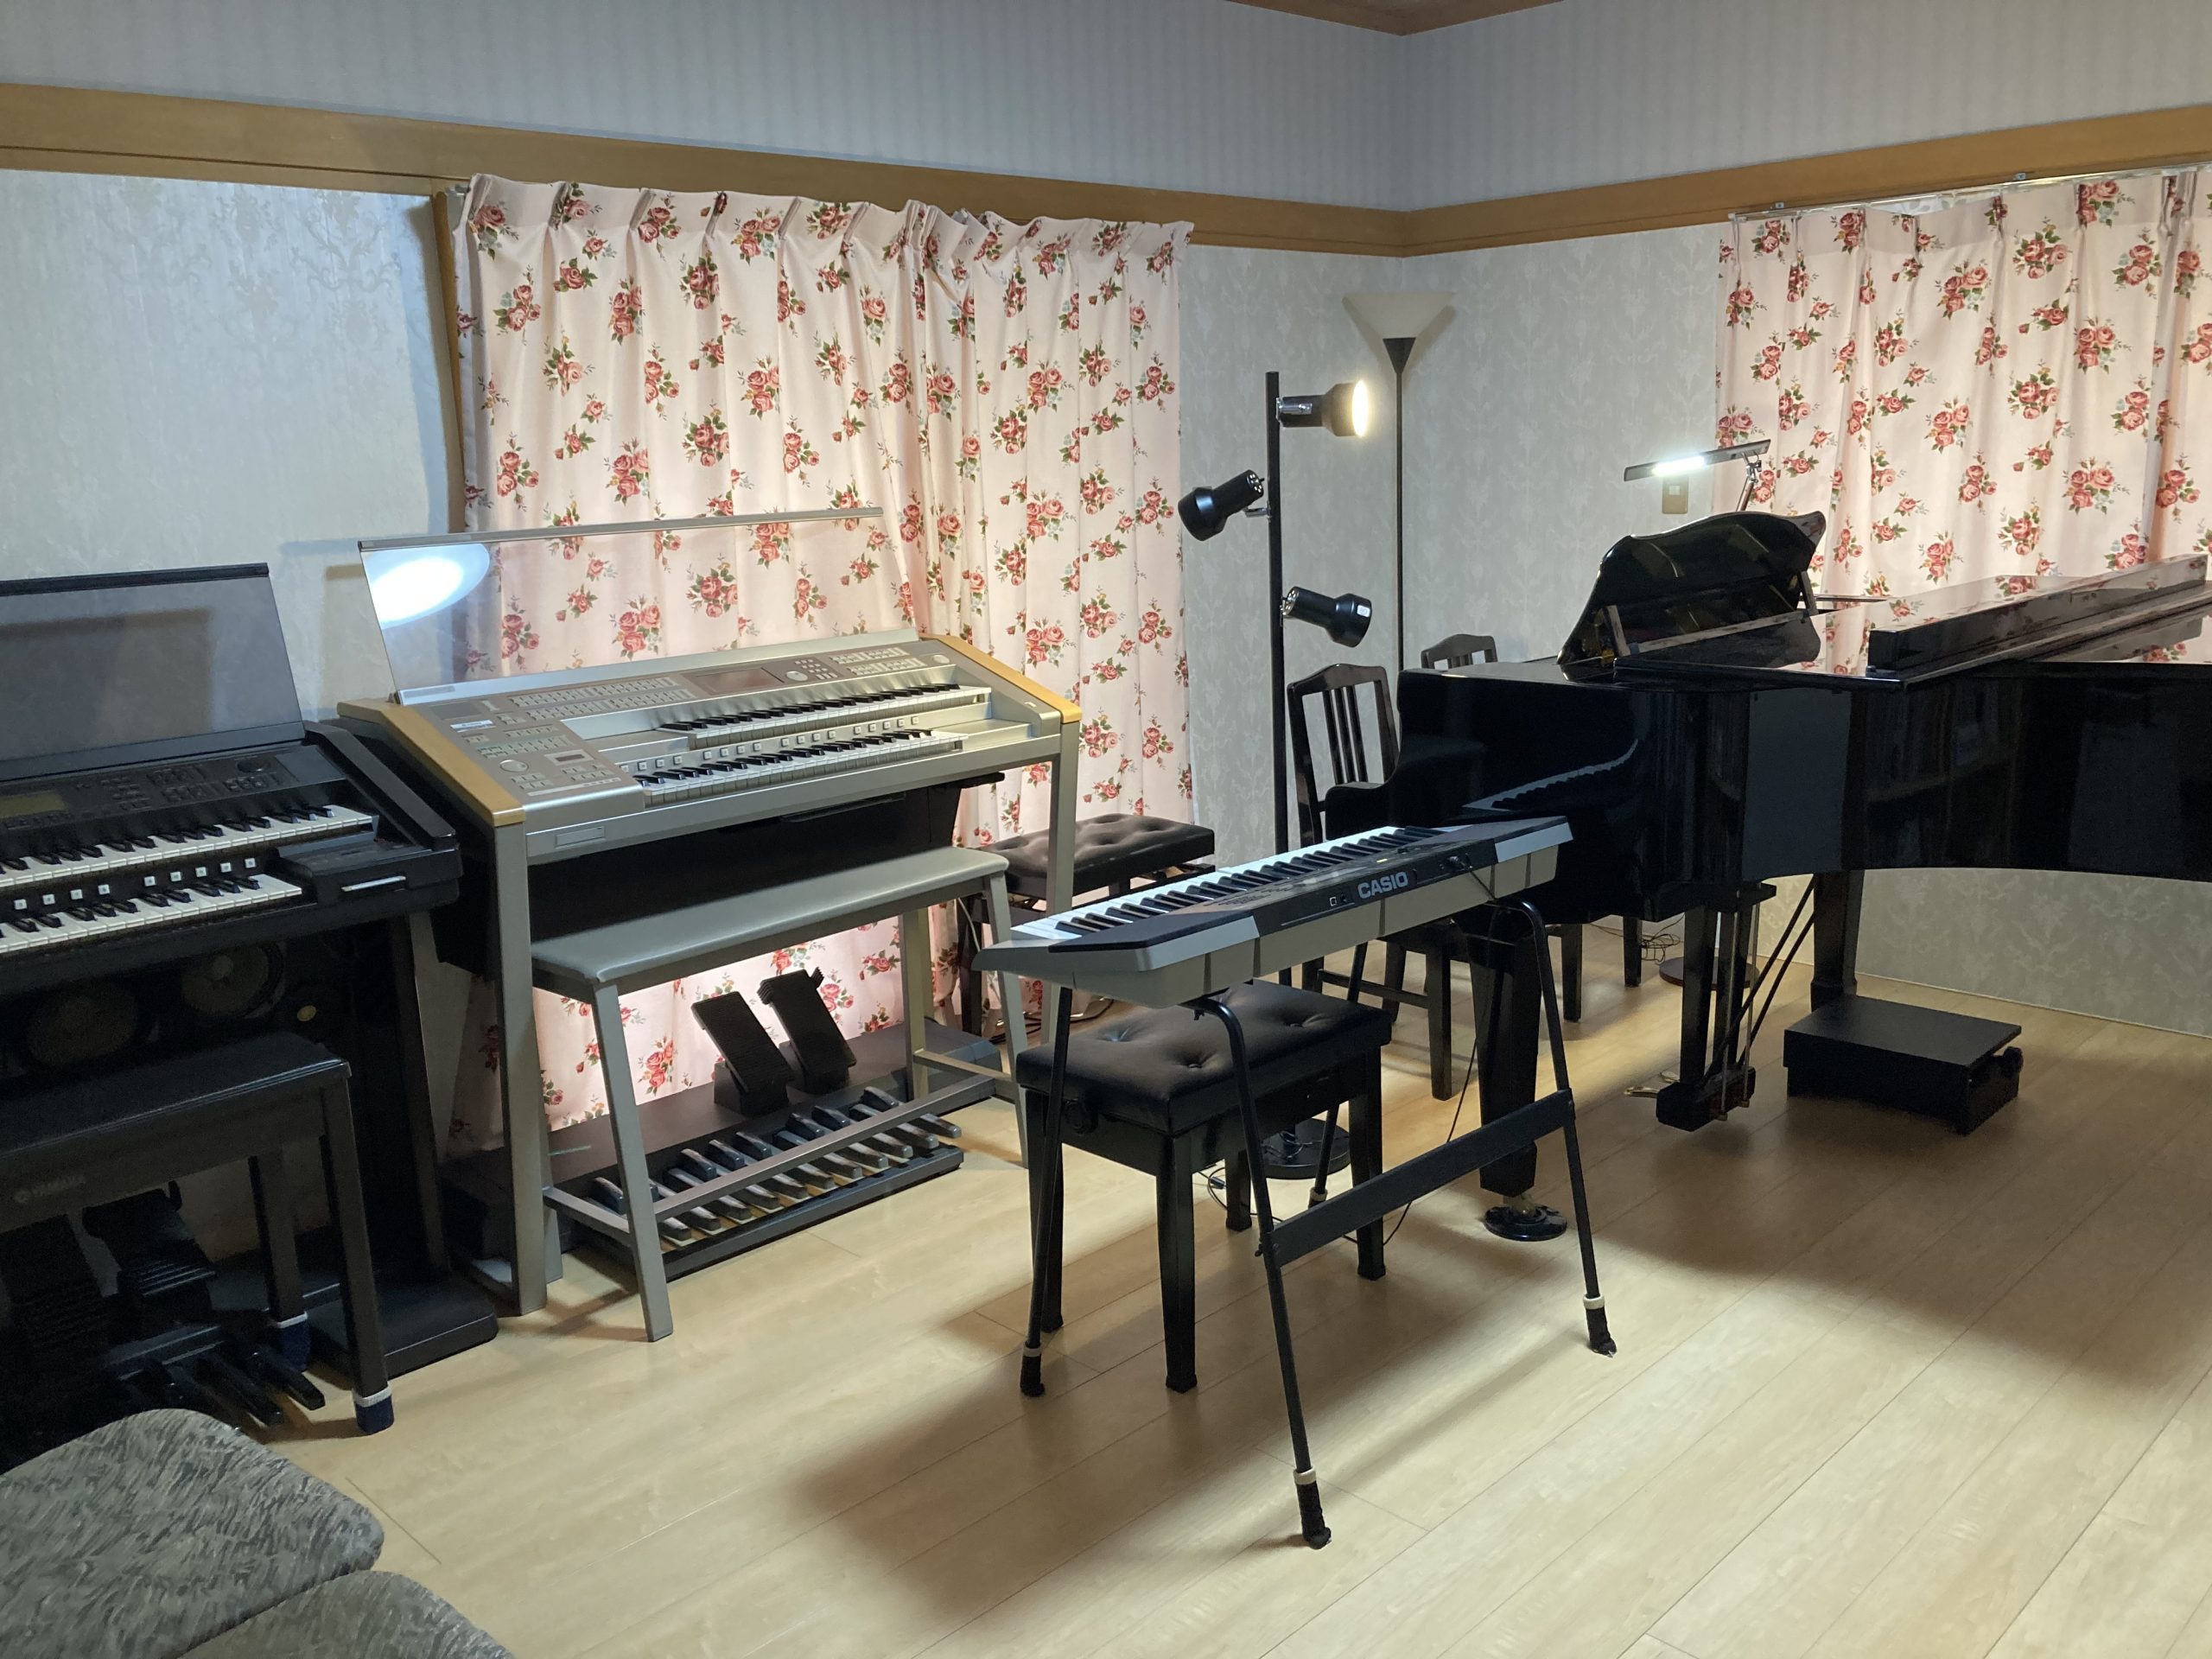 太田幸子音楽教室の雰囲気がわかる写真